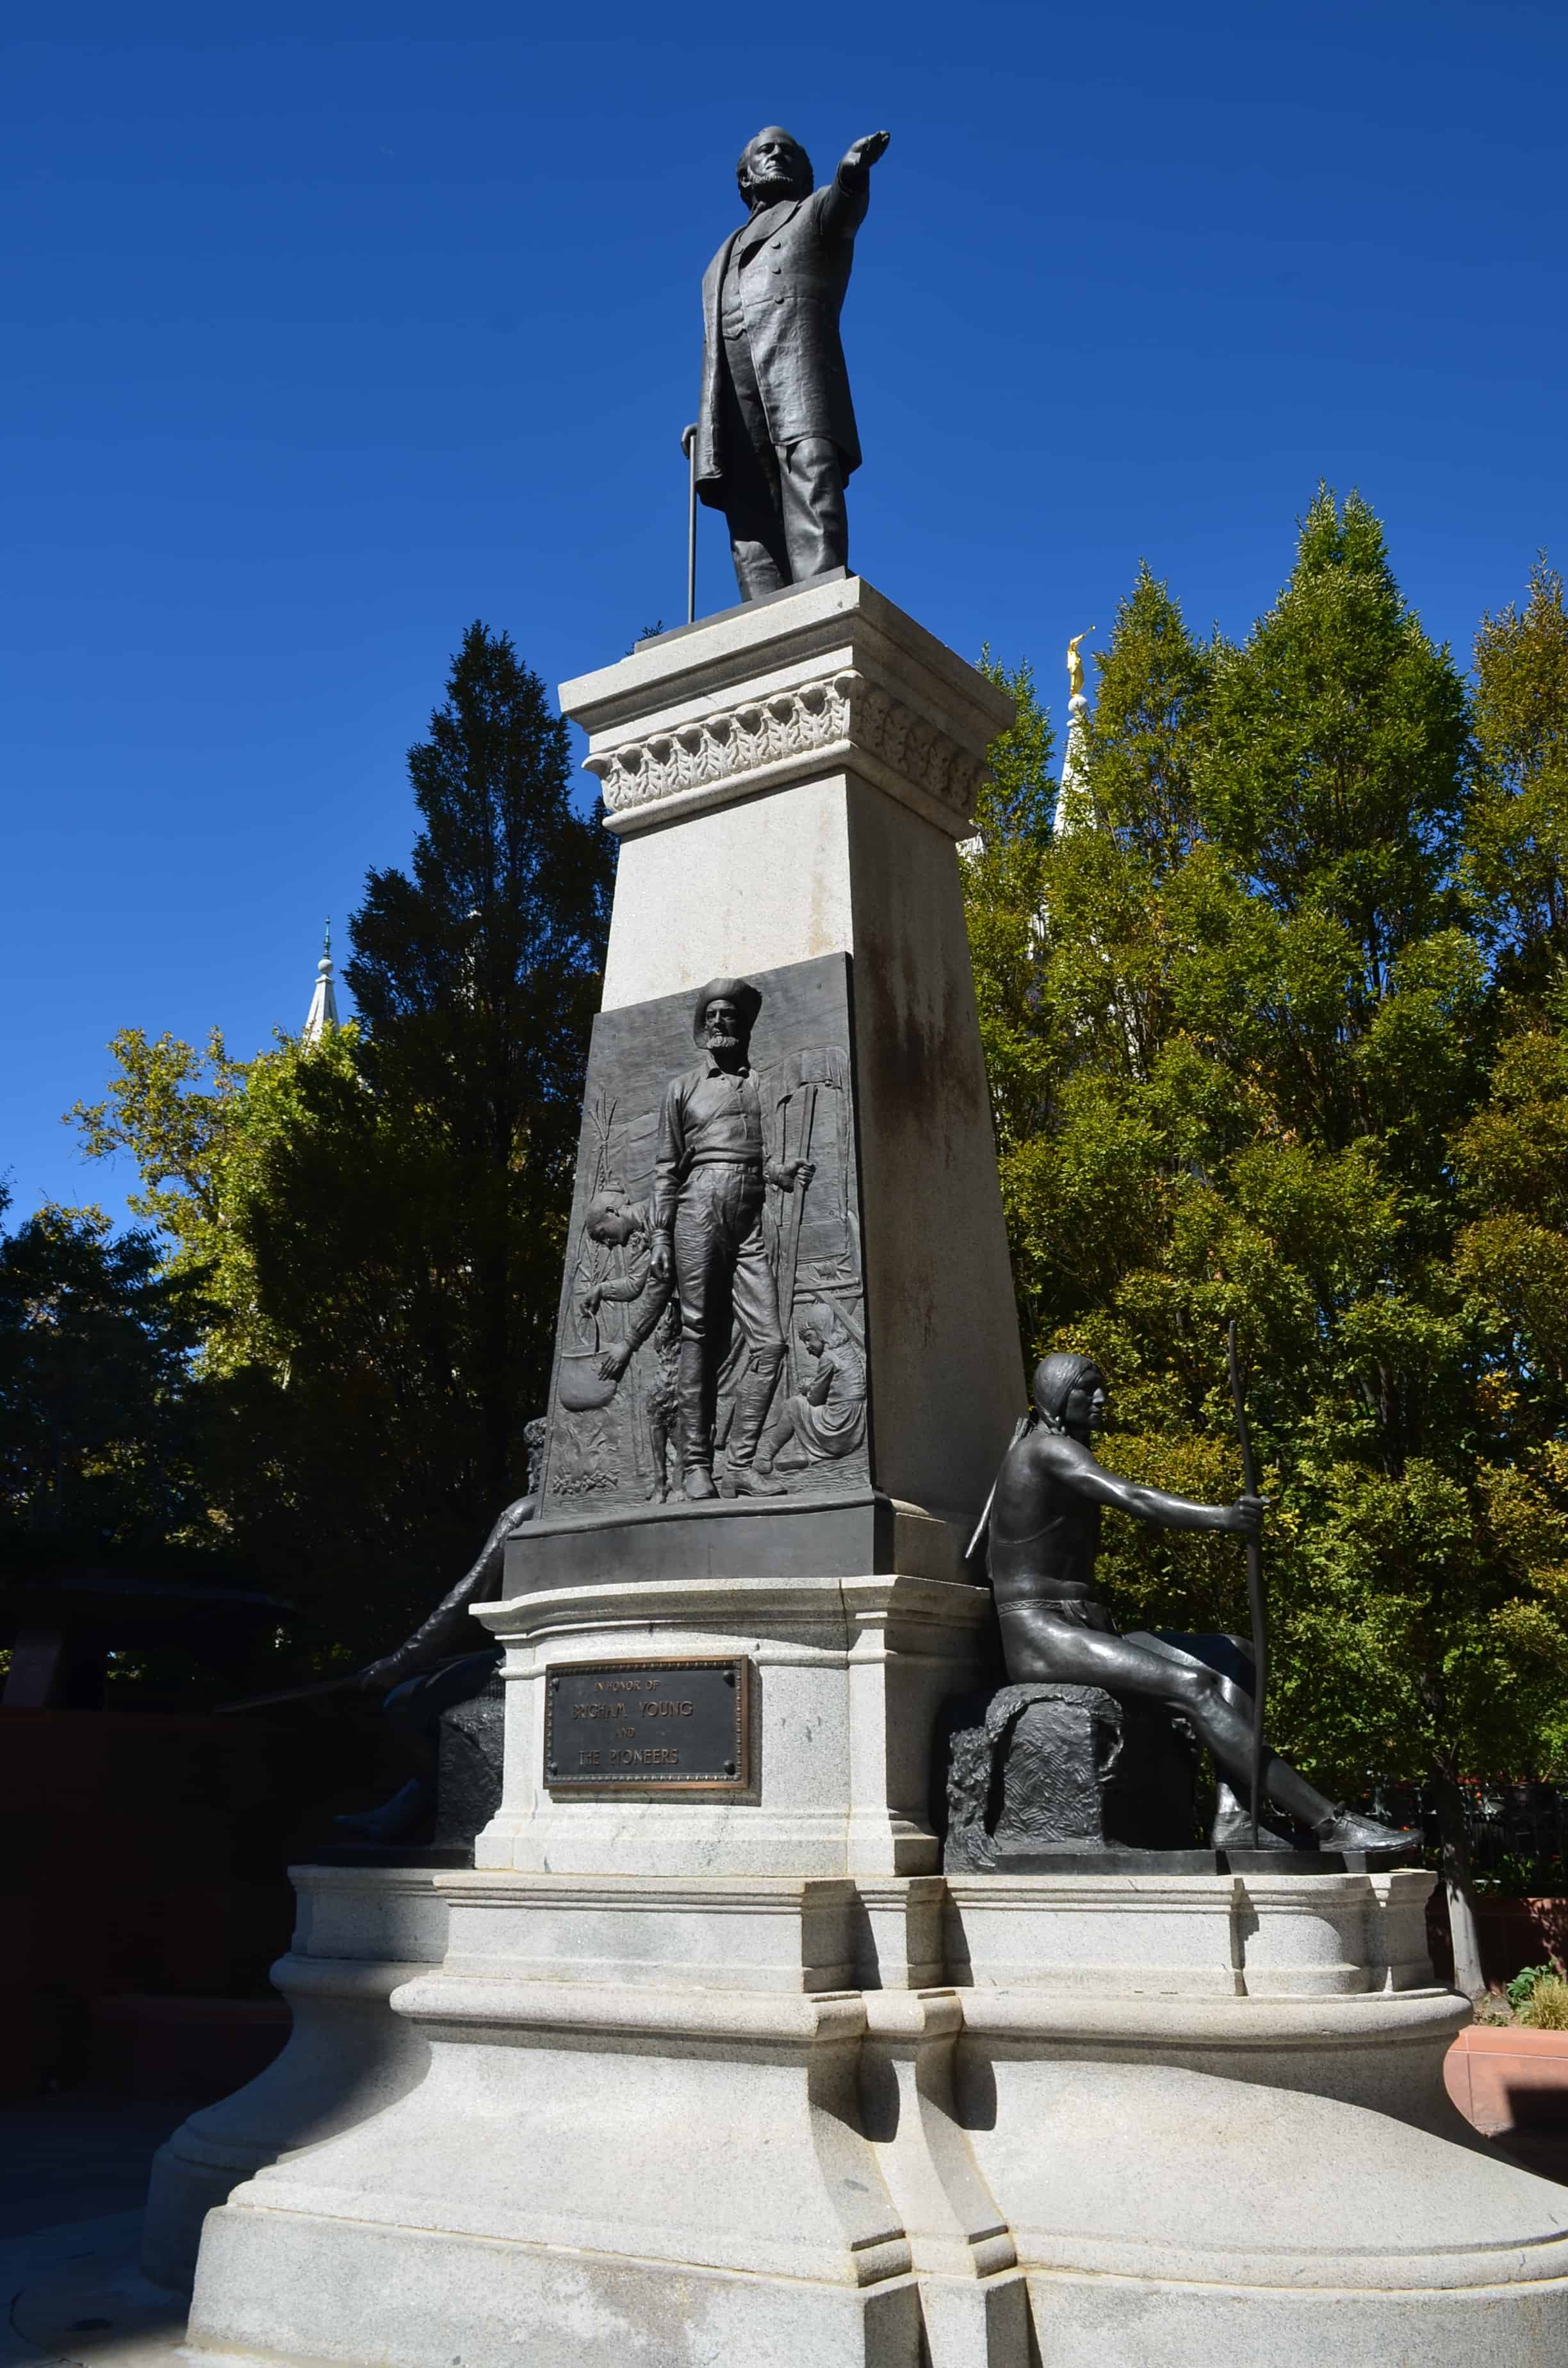 Brigham Young monument at Temple Square in Salt Lake City, Utah